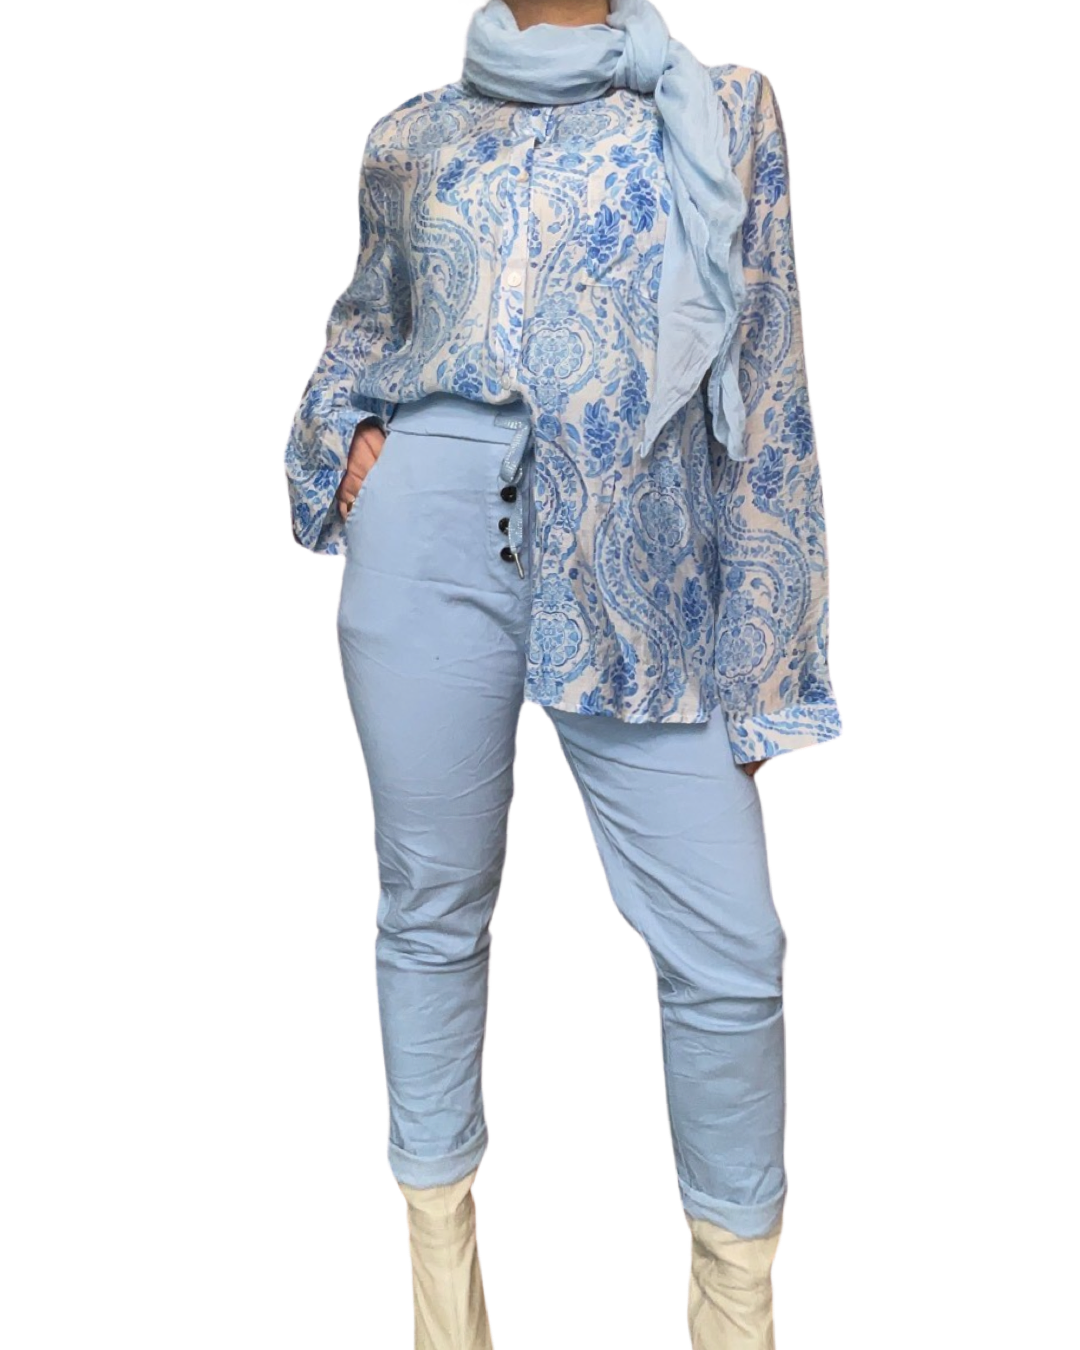 Chemise blanche pour femme imprimé de motifs floraux  avec foulard, pantalons bleu ciel et bottes beiges.